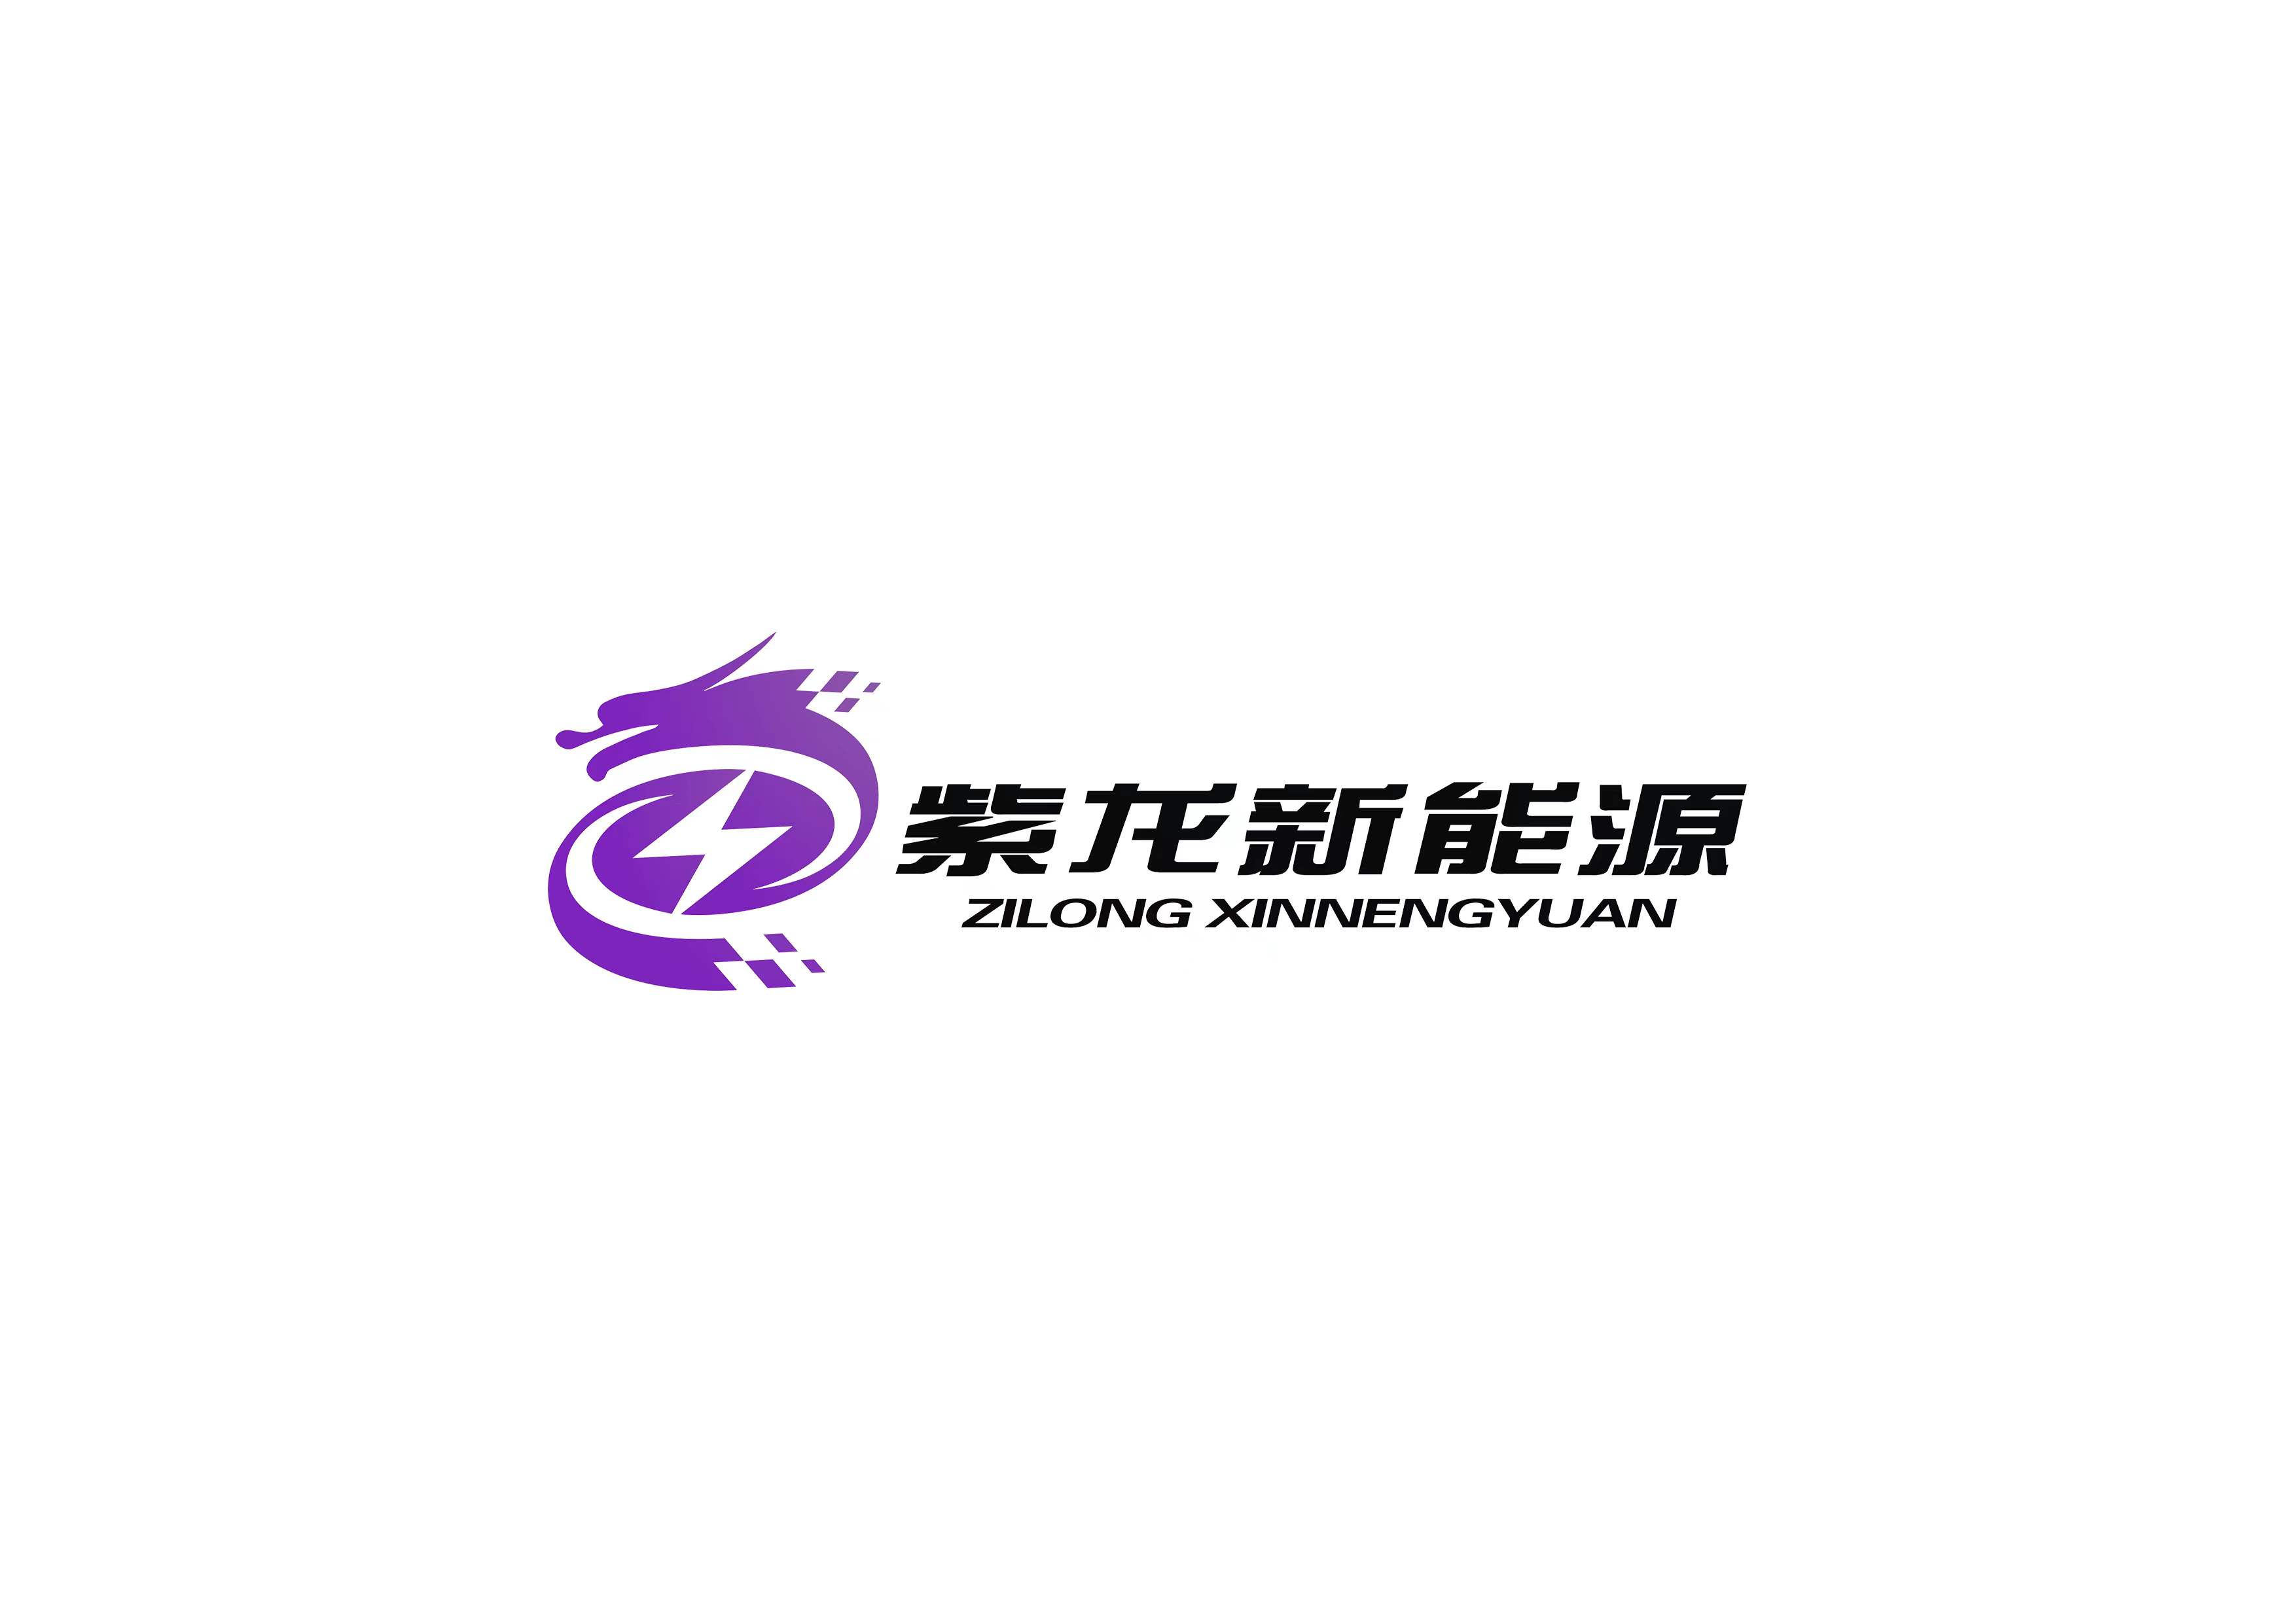 上海紫龙新能源有限公司LOGO